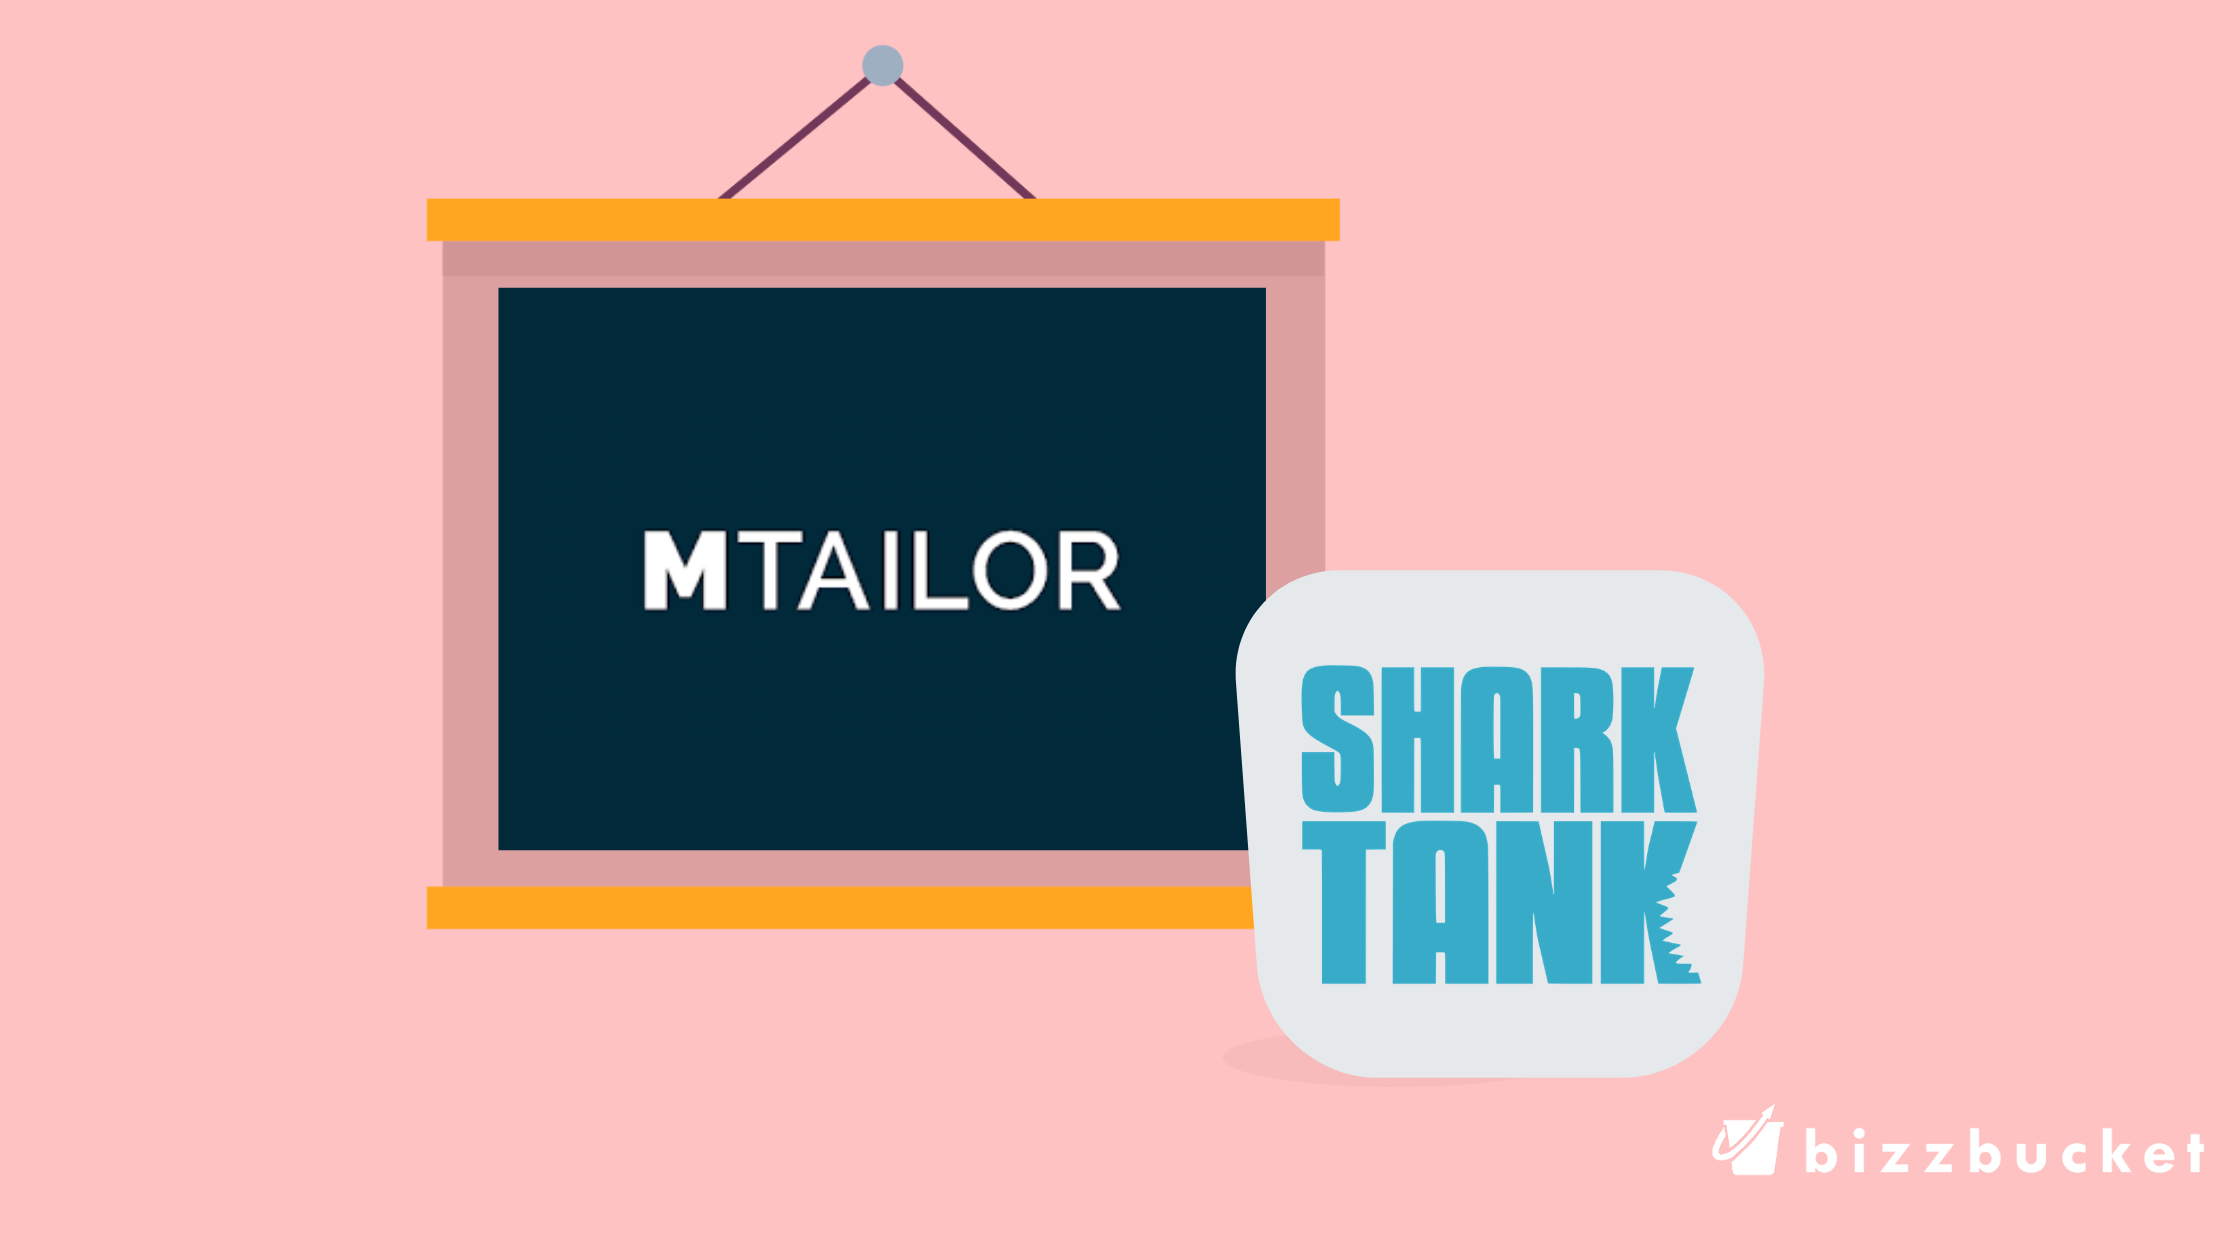 MTailor shark tank update